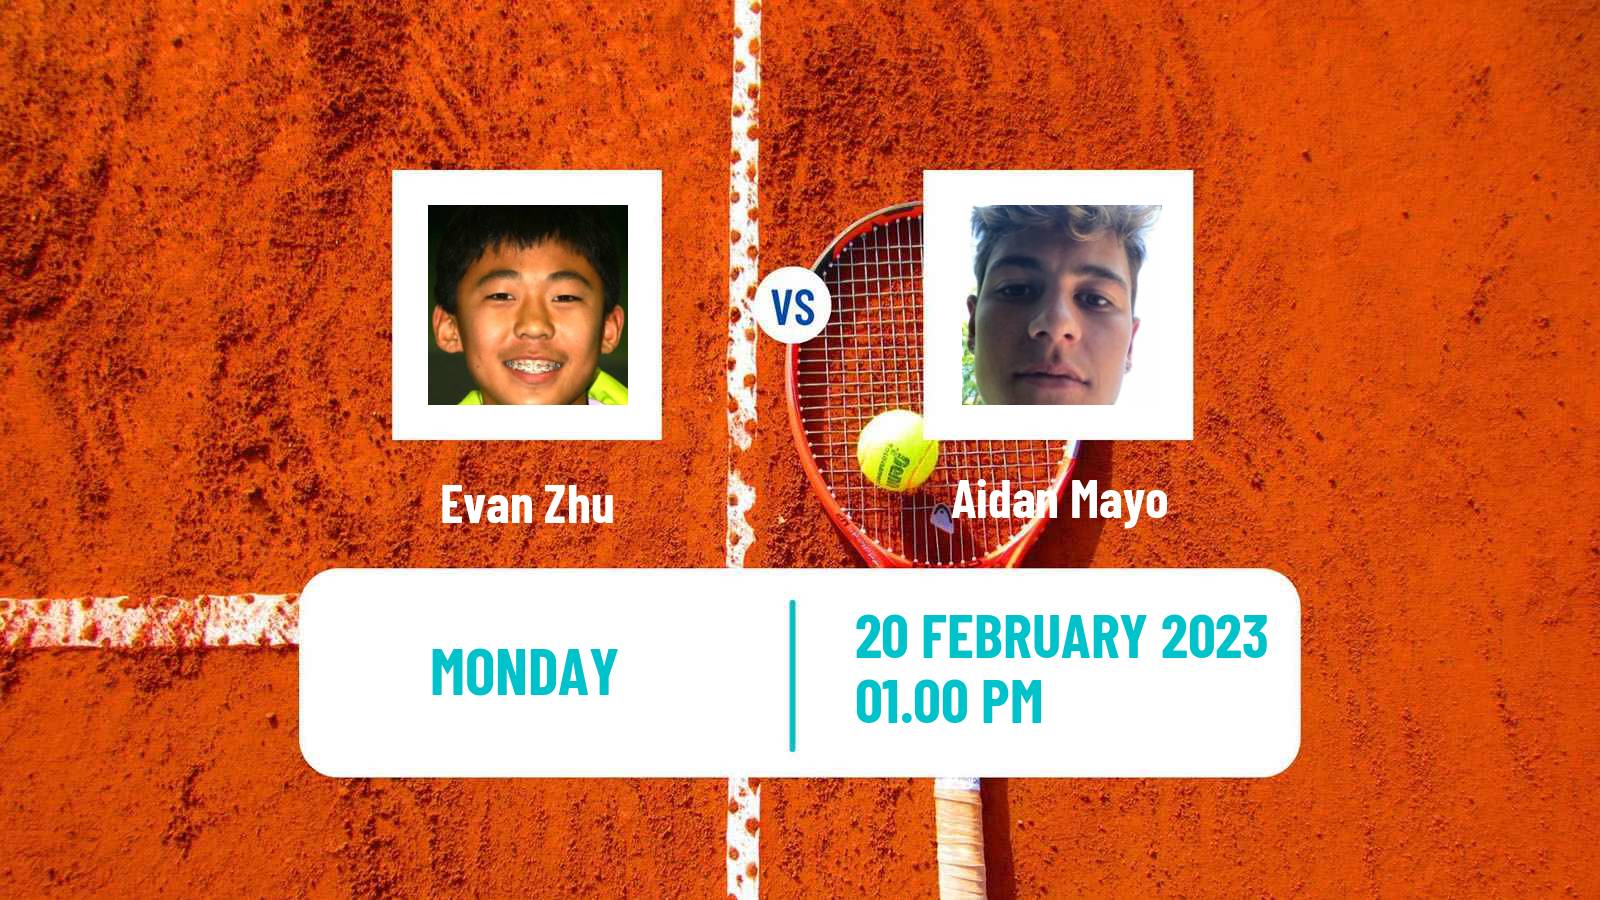 Tennis ATP Challenger Evan Zhu - Aidan Mayo